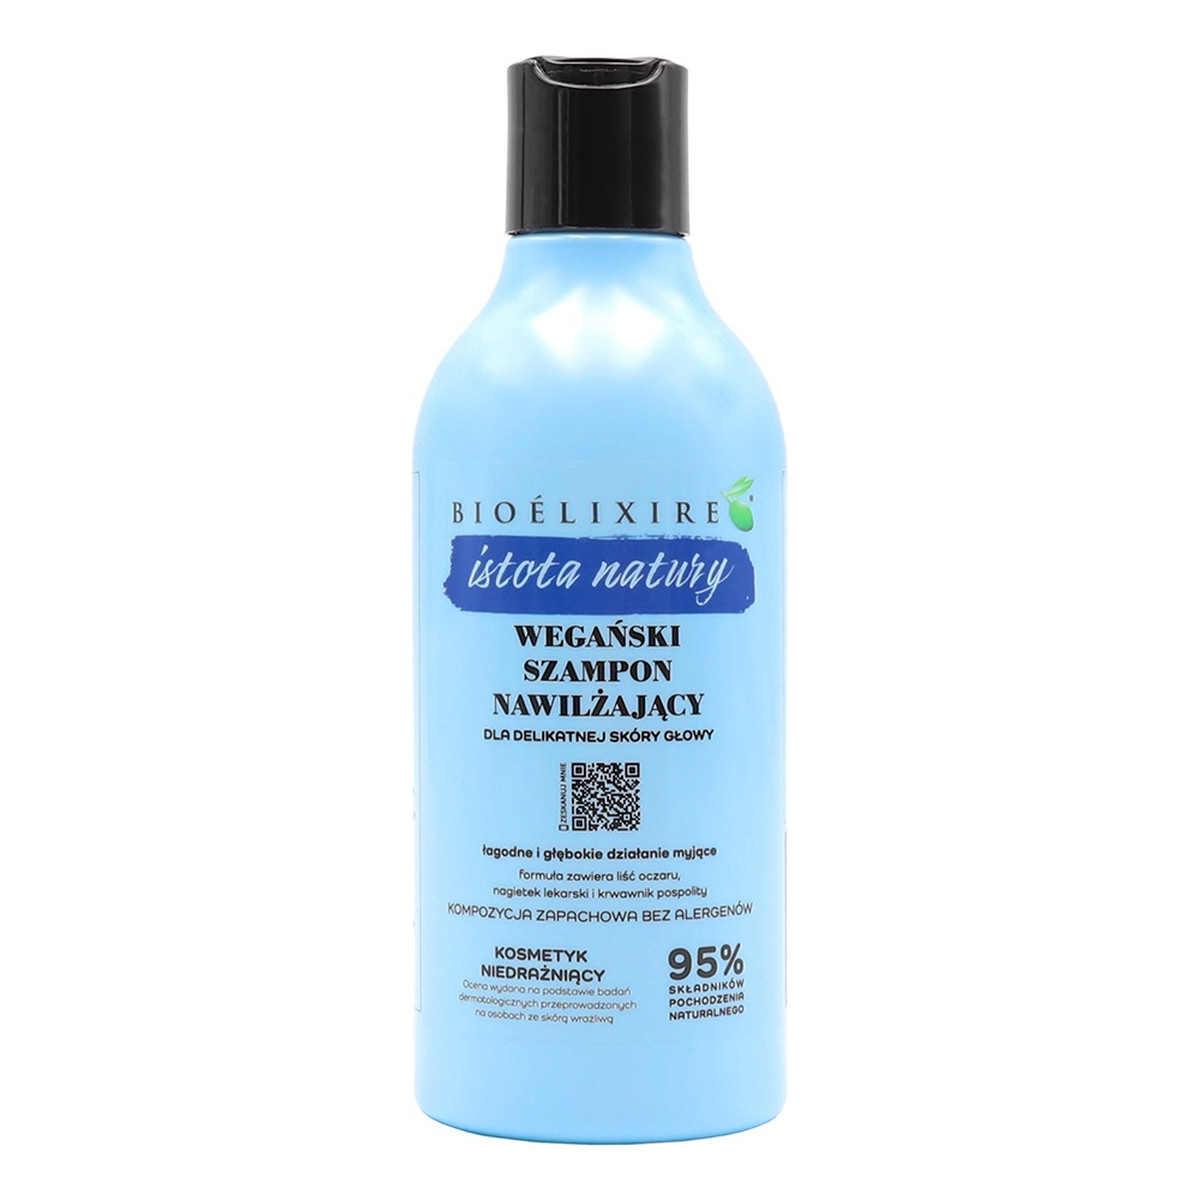 Bioelixire Istota natury wegański szampon nawilżający dla delikatnej skóry głowy 400ml